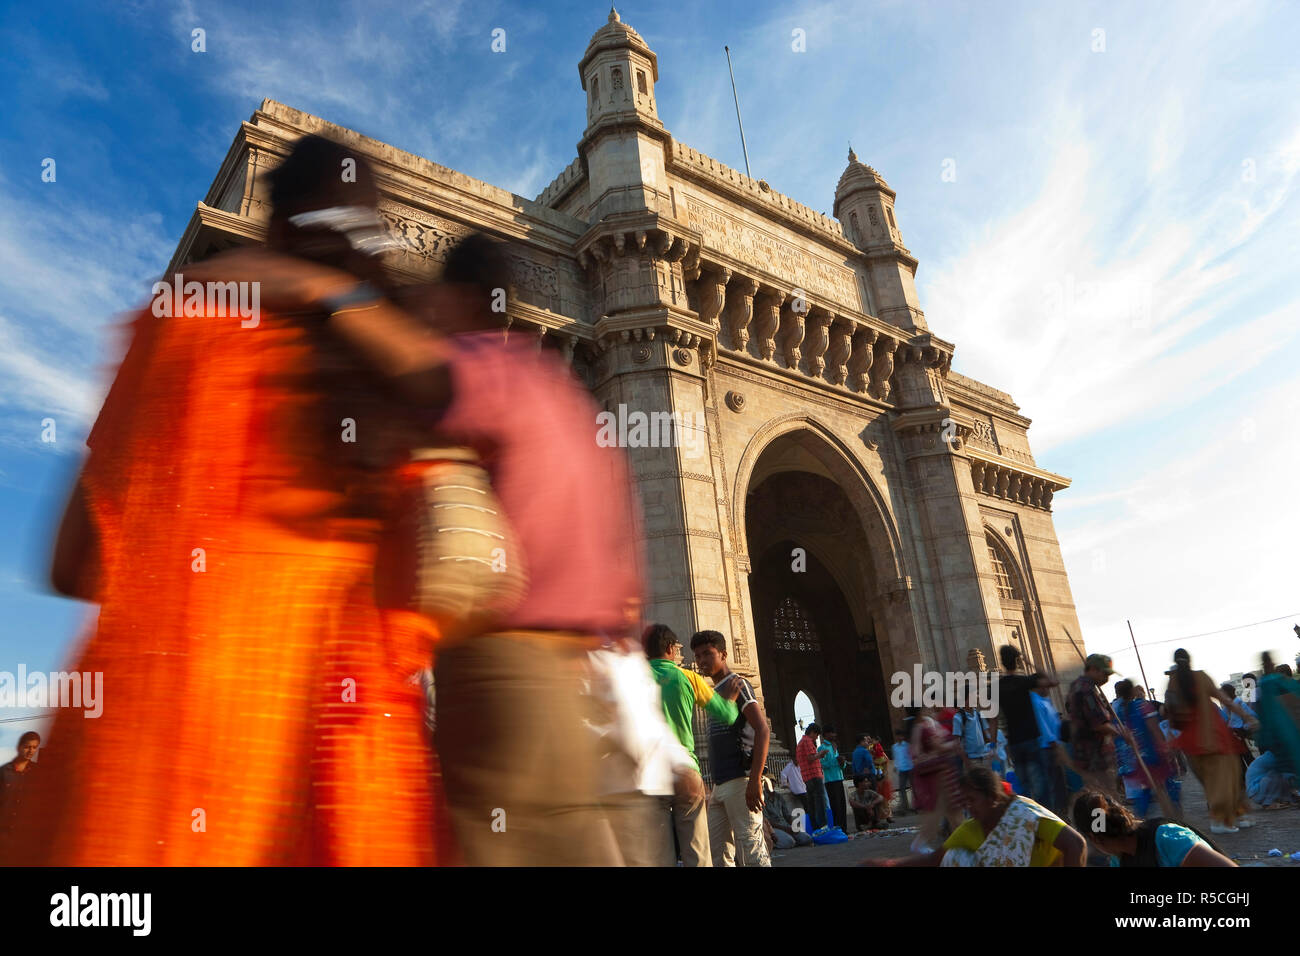 Gateway of India, Mumbai (Bombay), India Stock Photo